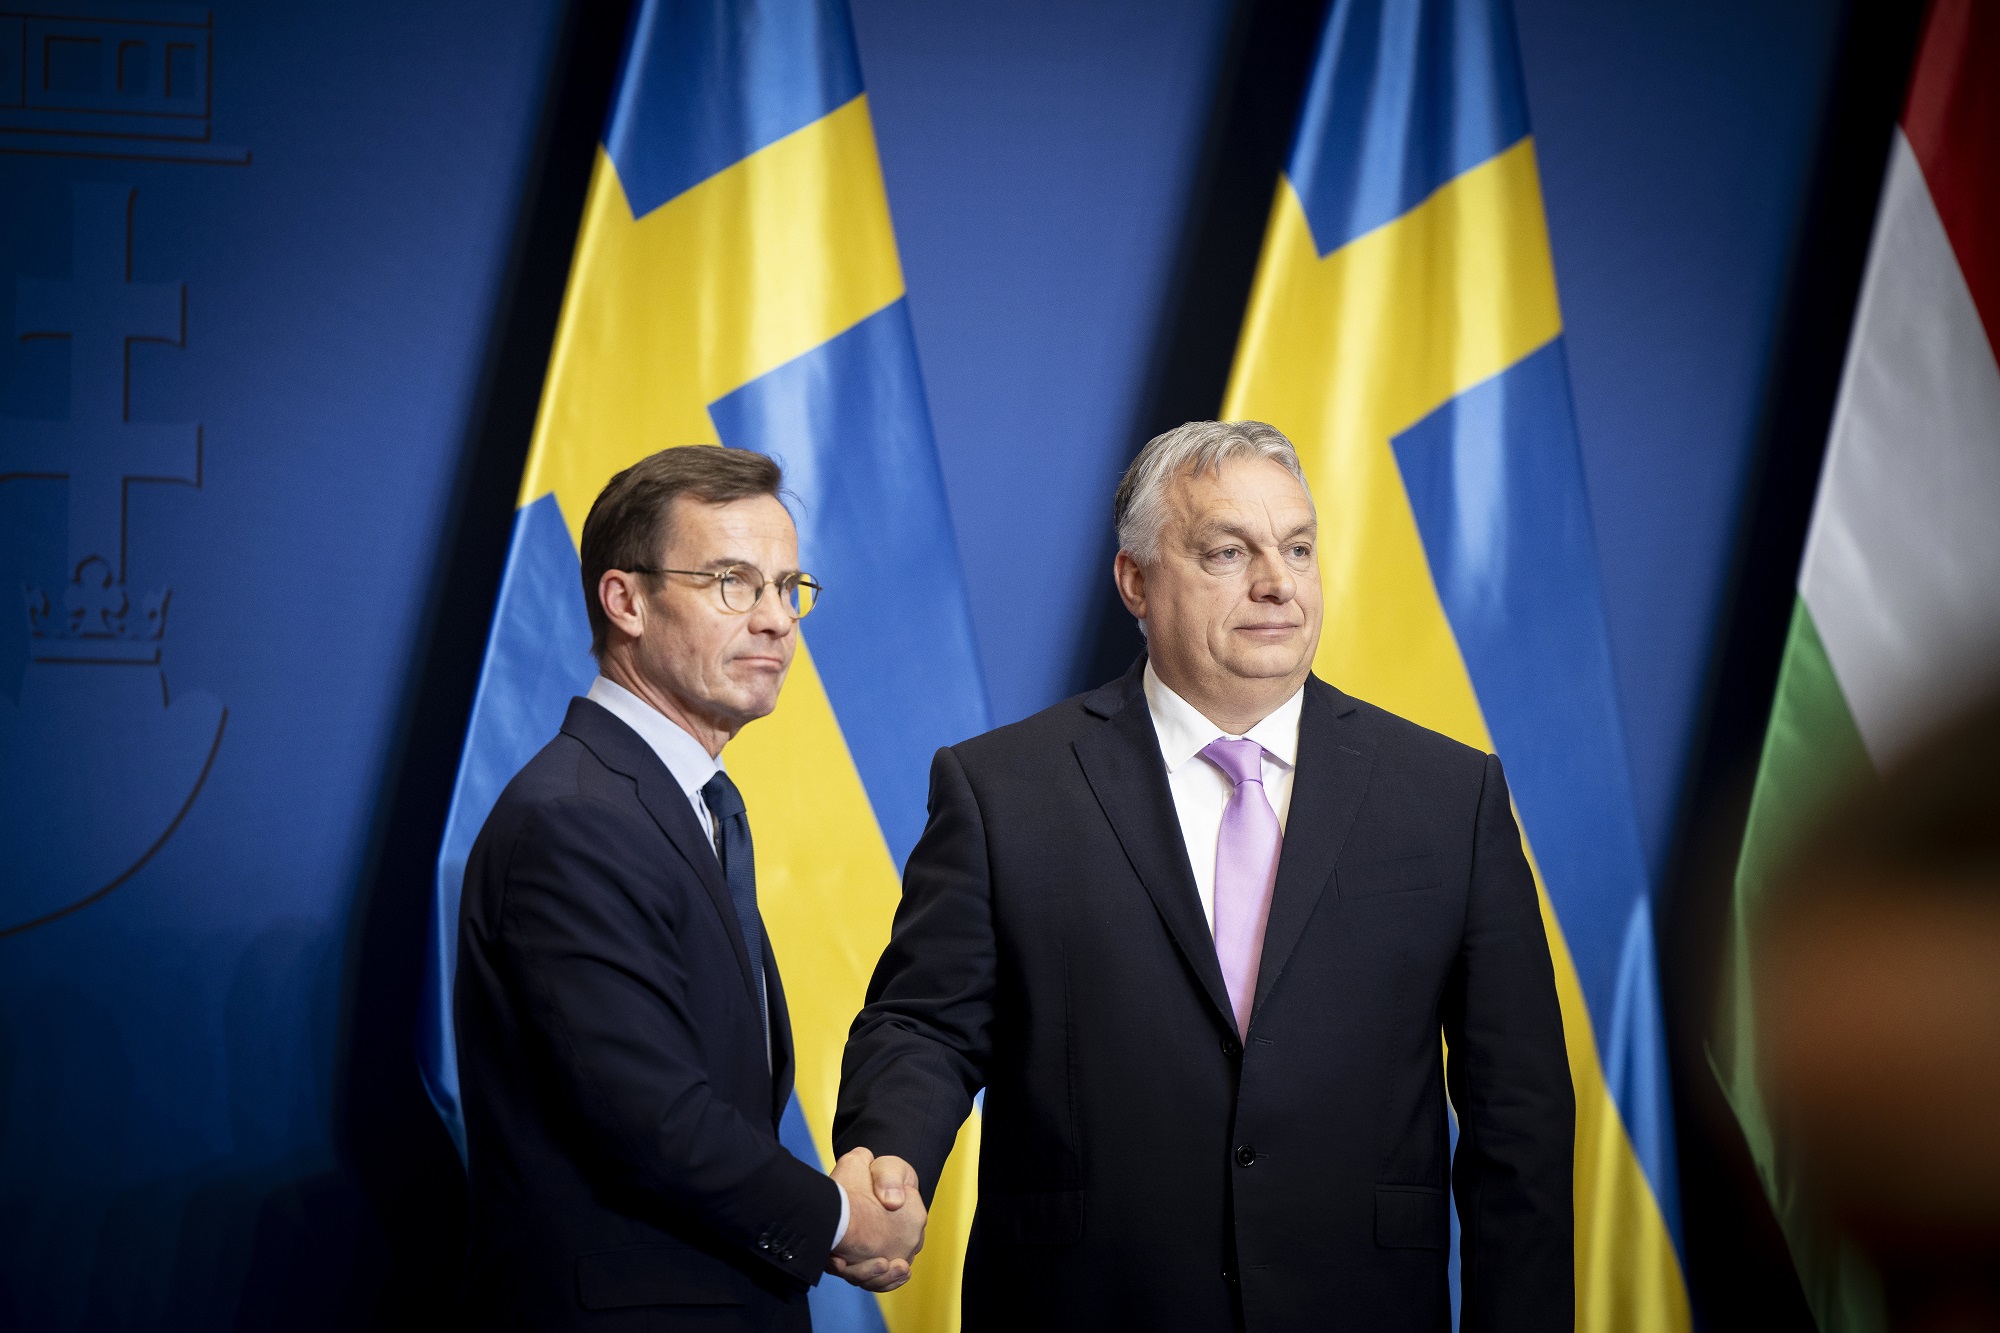 Eldőlt: Jönnek a svéd Gripenek, cserébe Svédország megy a NATO-ba